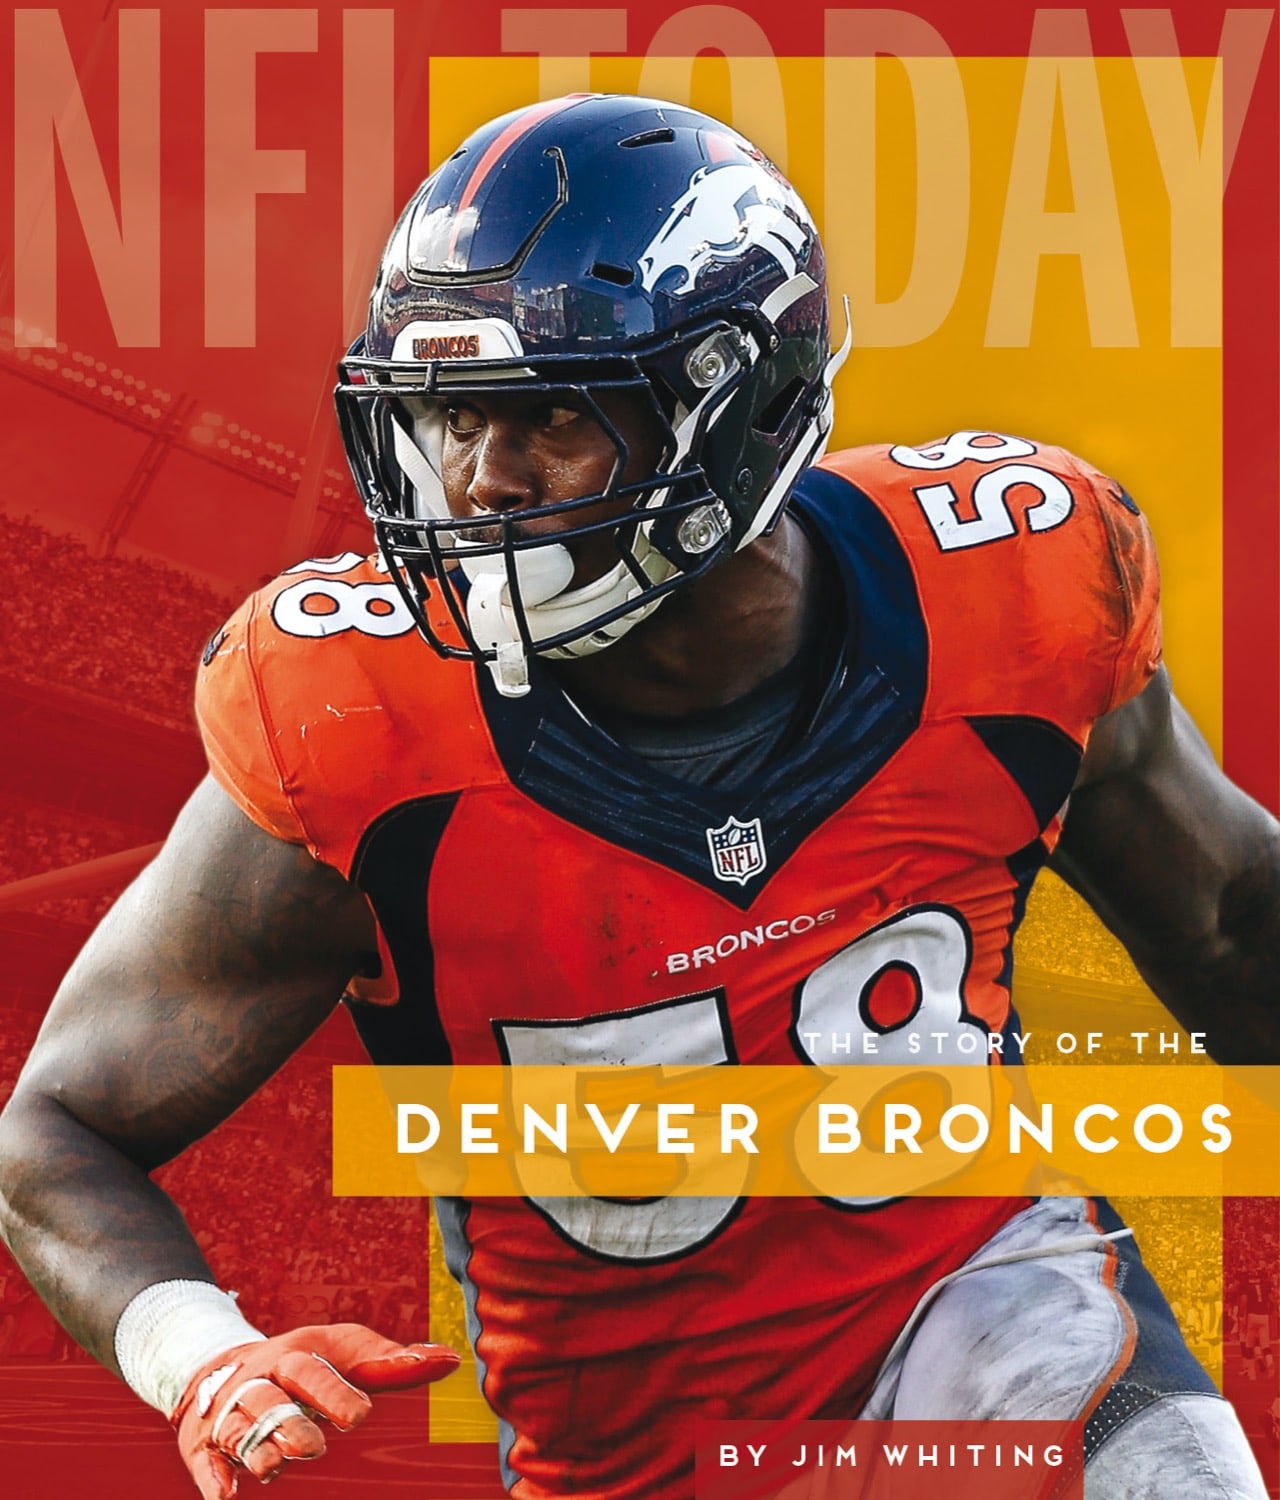 NFL Today: Denver Broncos – The Creative Company Shop